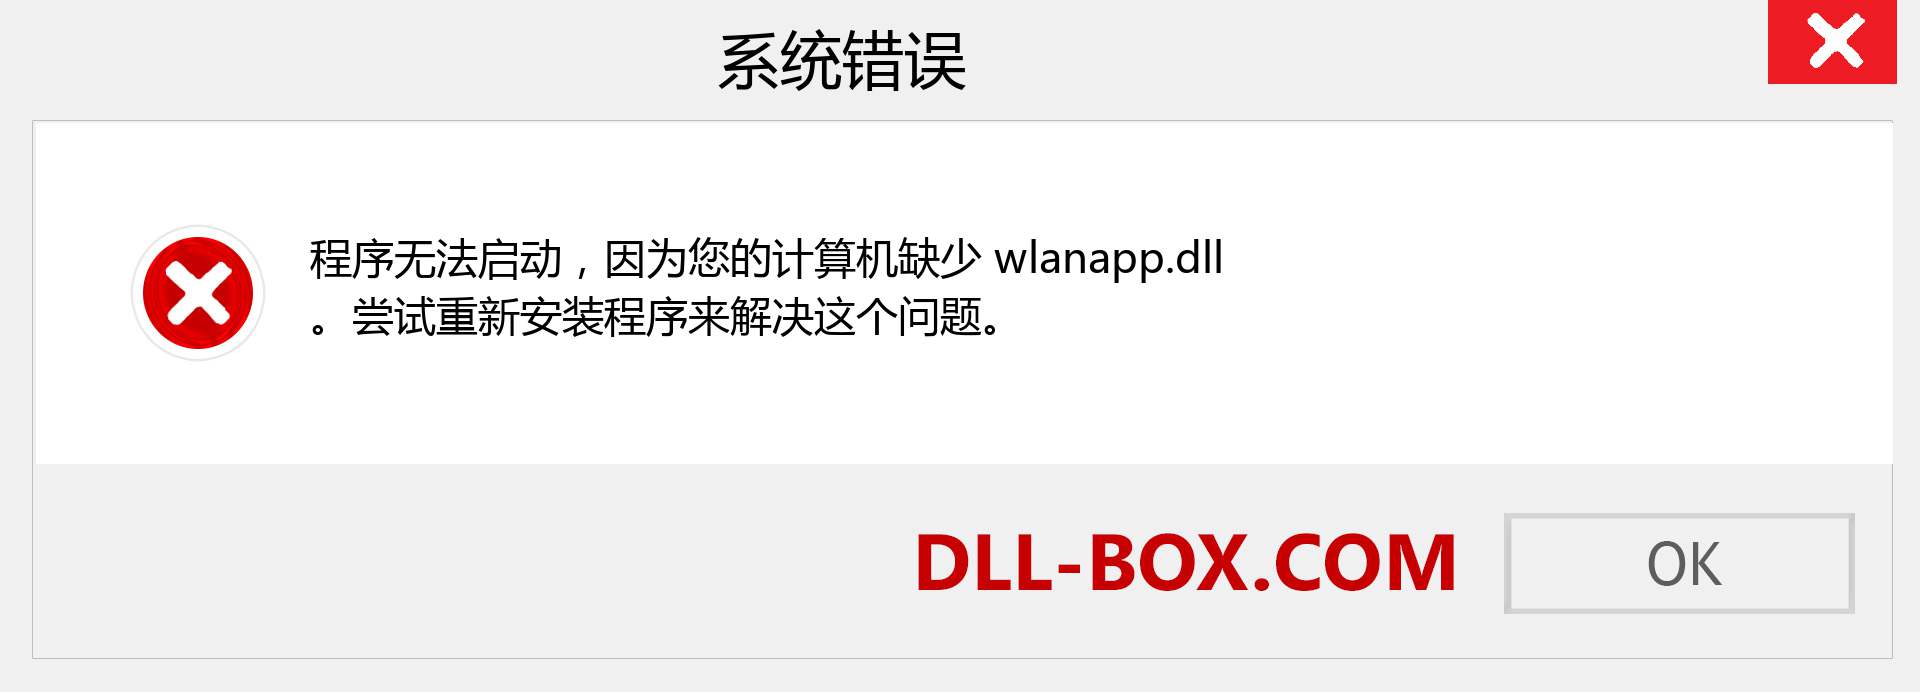 wlanapp.dll 文件丢失？。 适用于 Windows 7、8、10 的下载 - 修复 Windows、照片、图像上的 wlanapp dll 丢失错误